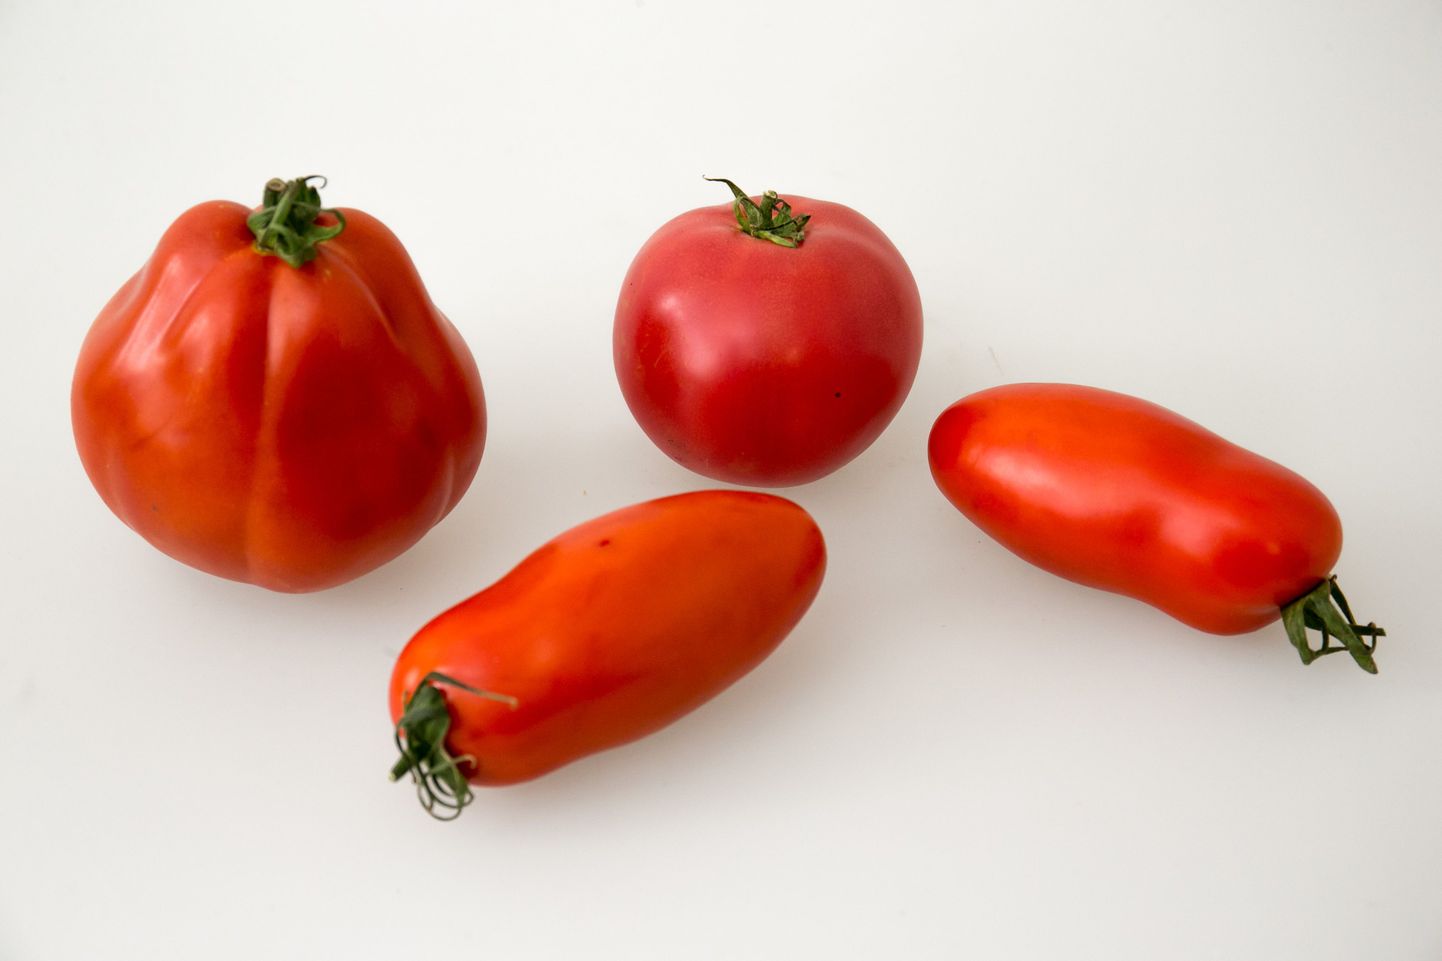 На фото помидоры сорта "Гурман", помидоры черри и два перцевидных томата.